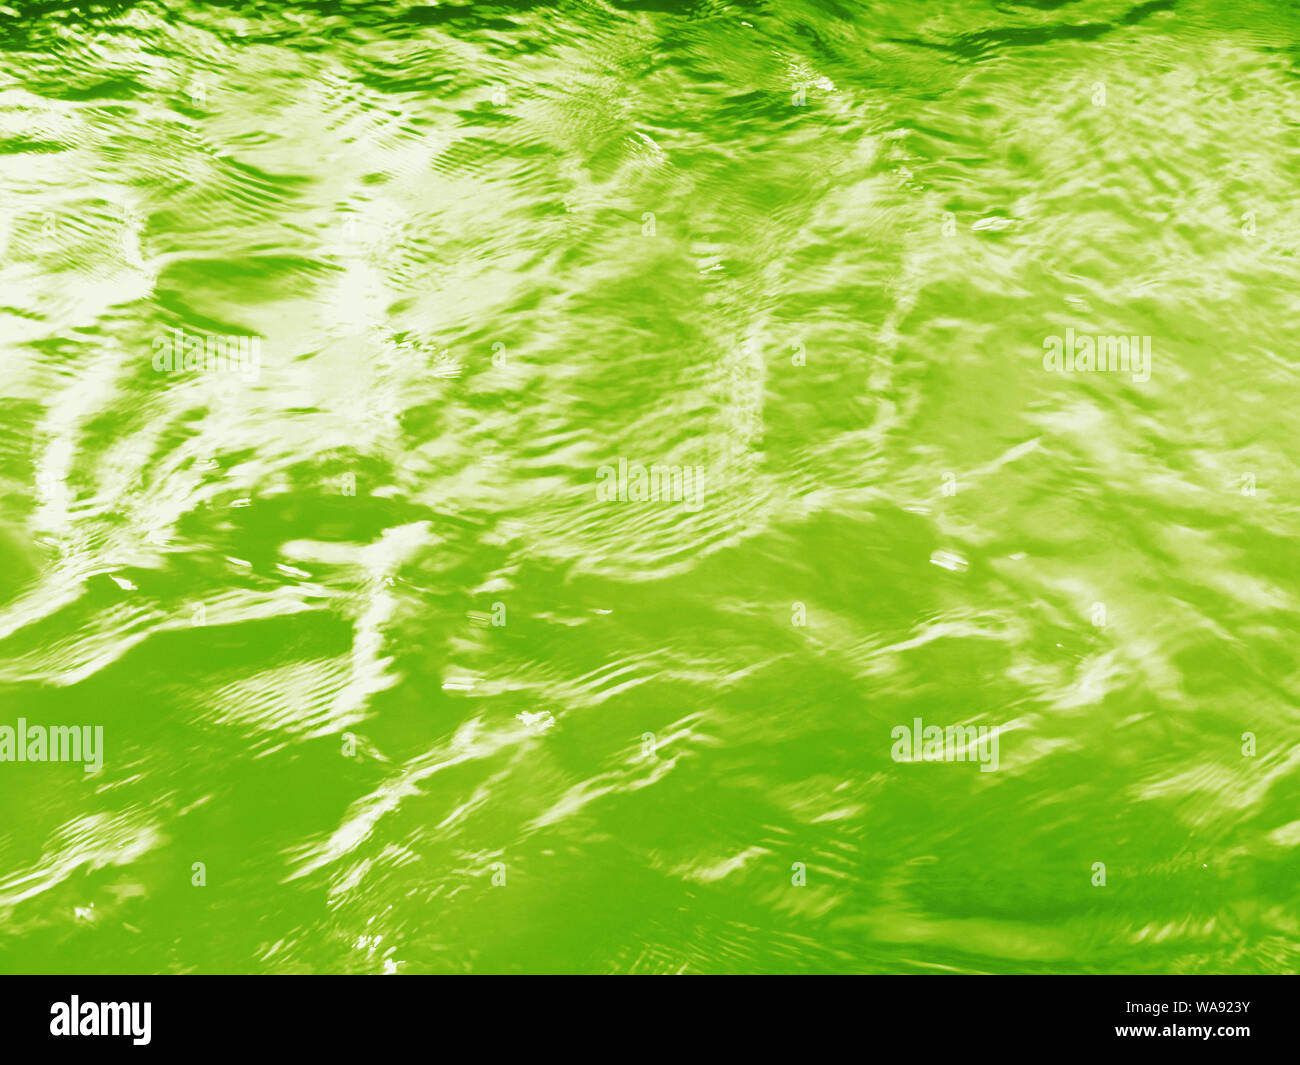 L'eau verte du matériau de texturation Banque D'Images